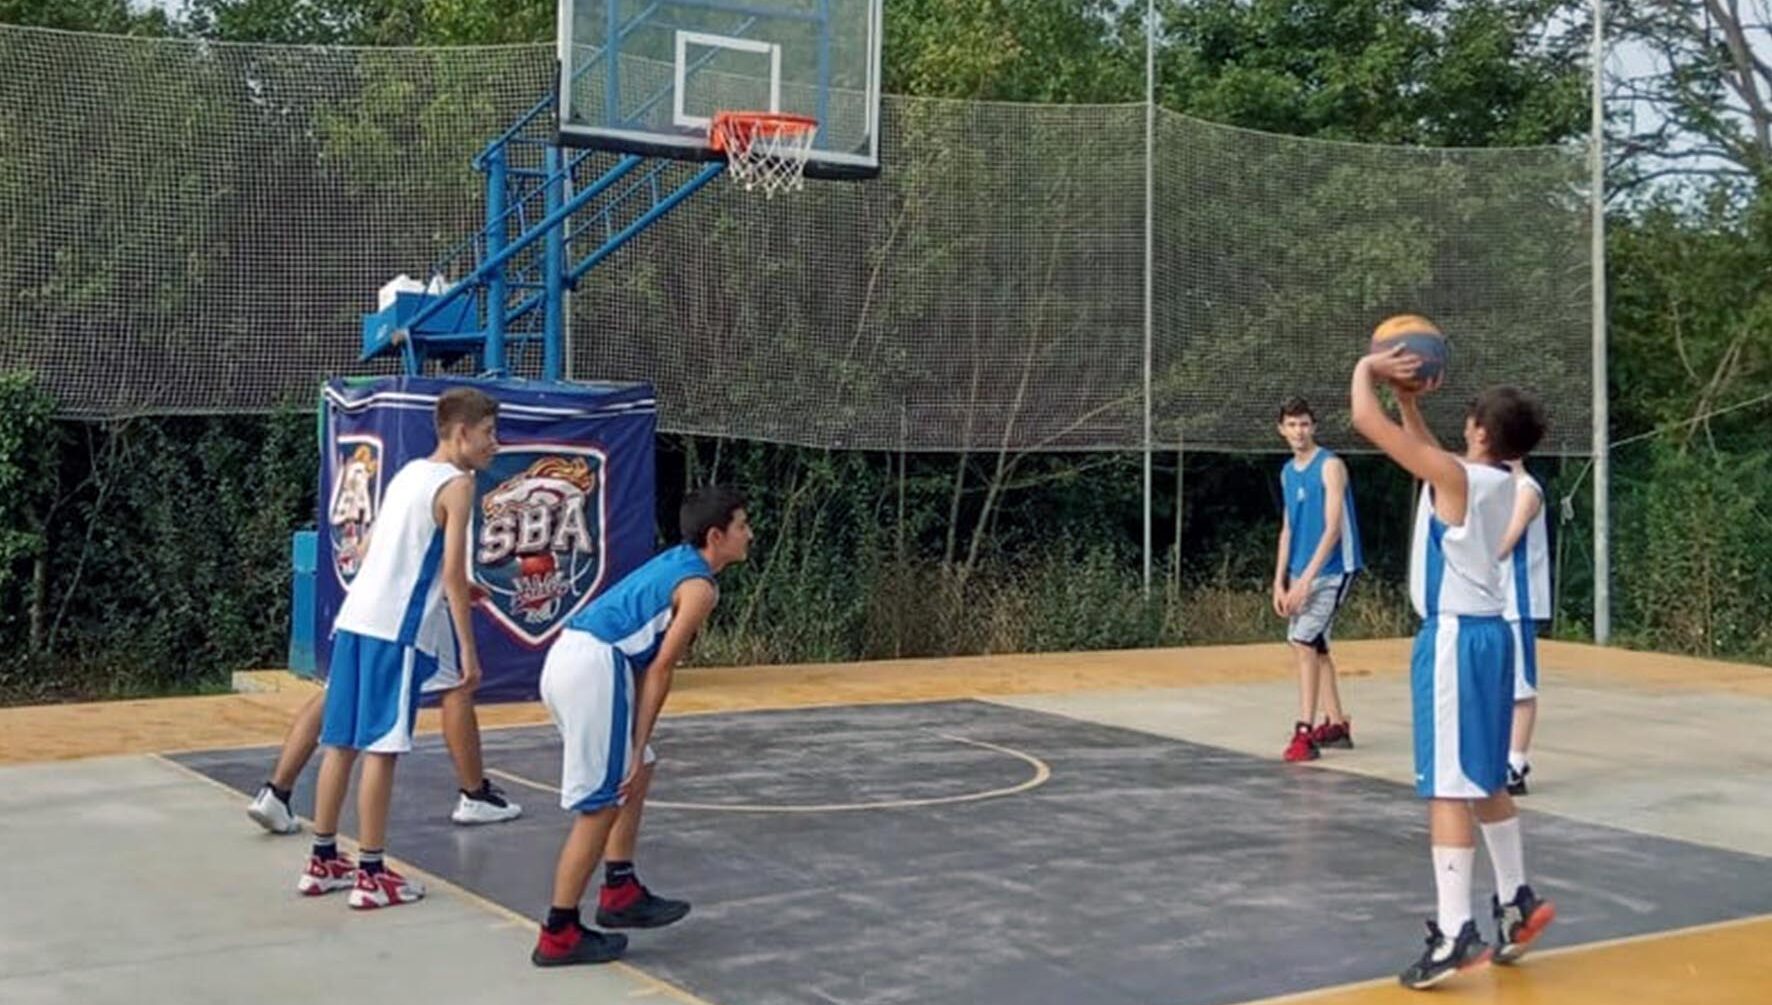 Scuola Basket Arezzo: un’estate all’insegna della pallacanestro con “Sba Summer”